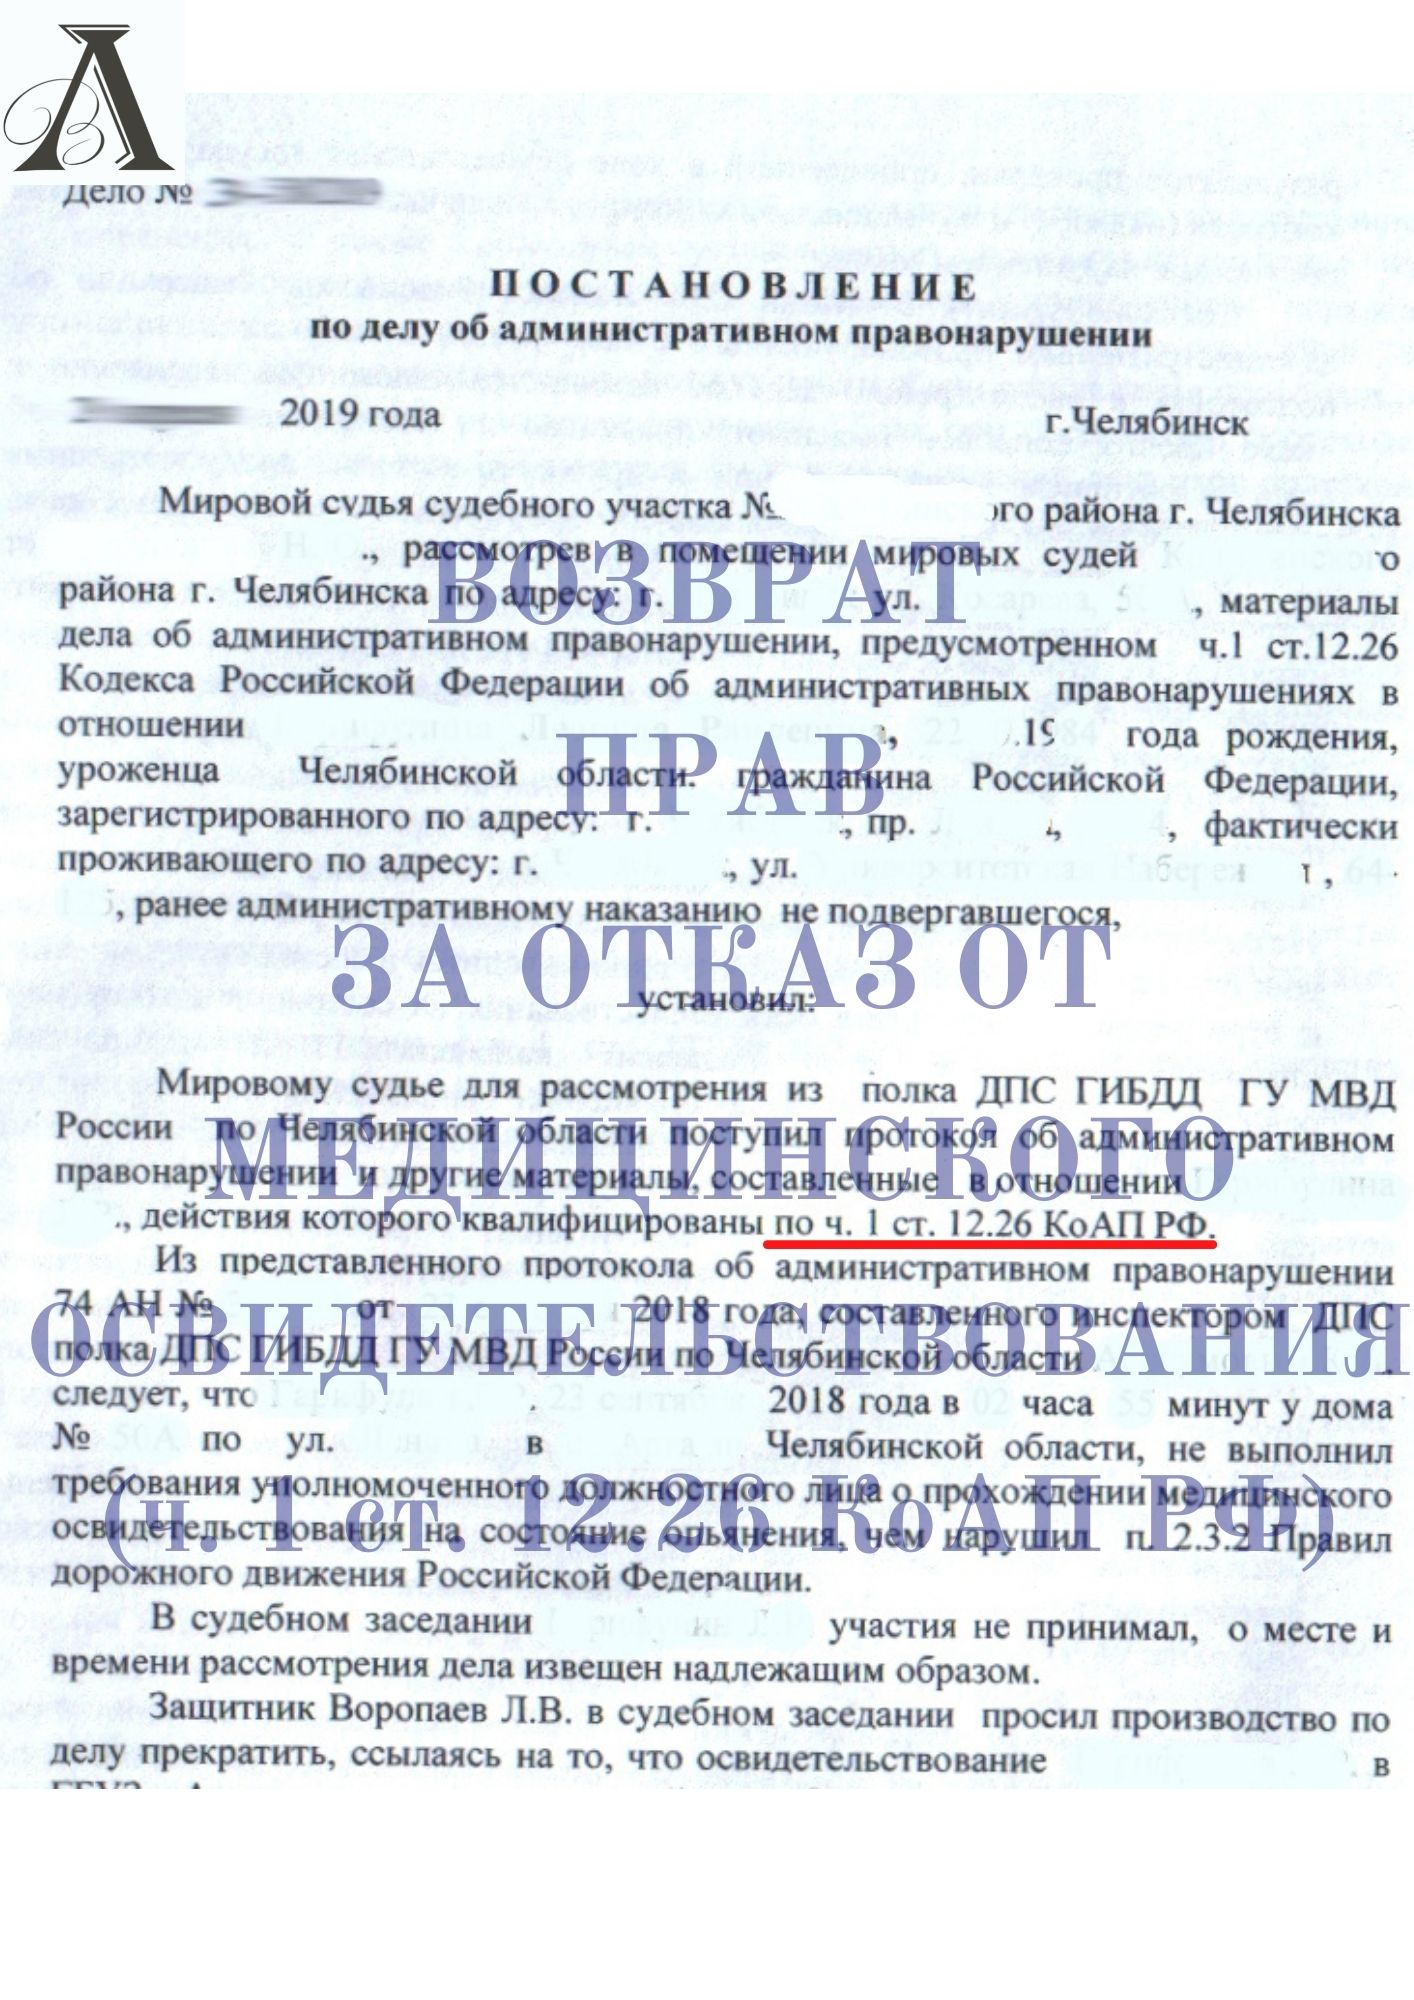 Вернули права за отказ от прохождения медицинского освидетельствования (ч.1 ст. 12.26 КоАП РФ)